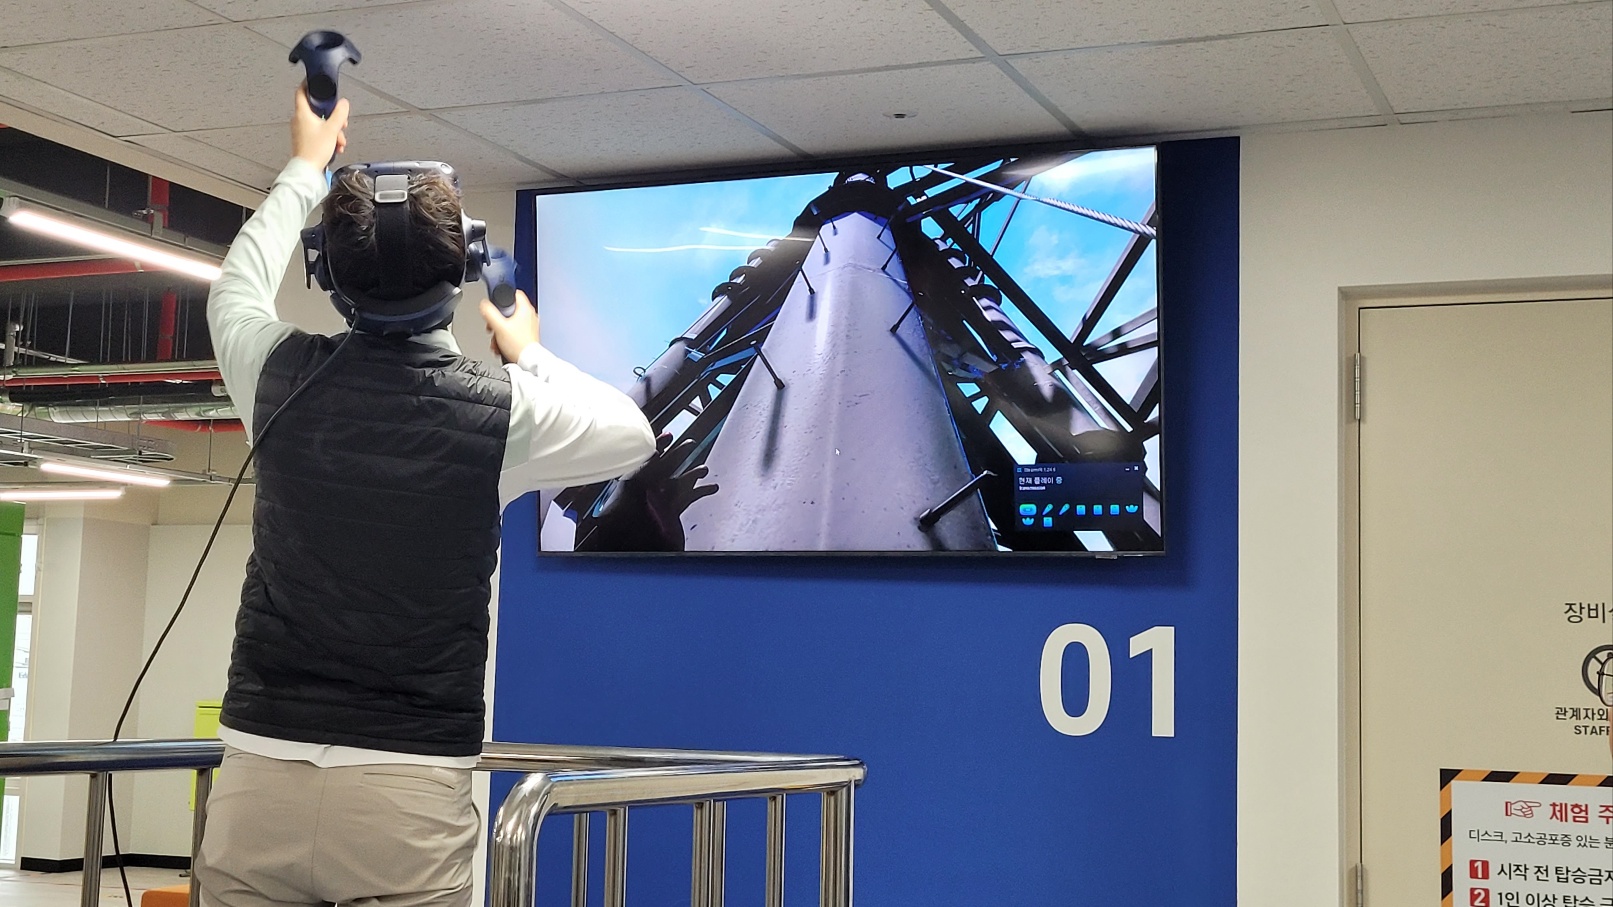 한국전기공사협회가 30일 충북 청주시 오송읍에서 신사옥 준공식을 연 가운데 스마 트 전기안전 인공지능(AI) 센터에서 가상현실(VR)를 이용한 송전탑 작업 체험을 하고 있다.